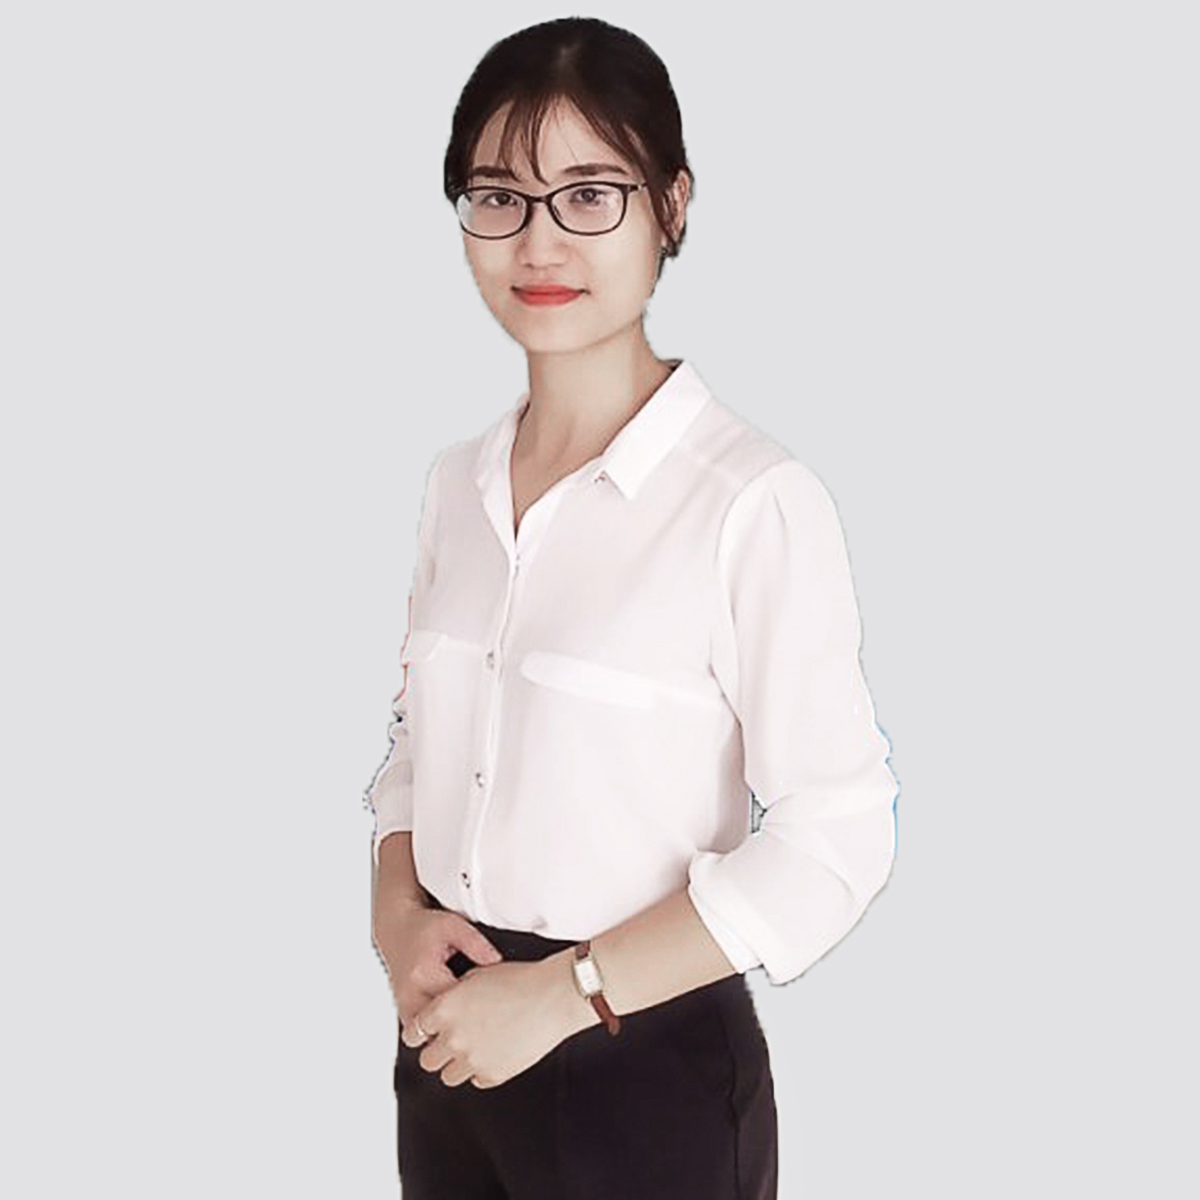 Ms. Tran Ha Thai (Rena)